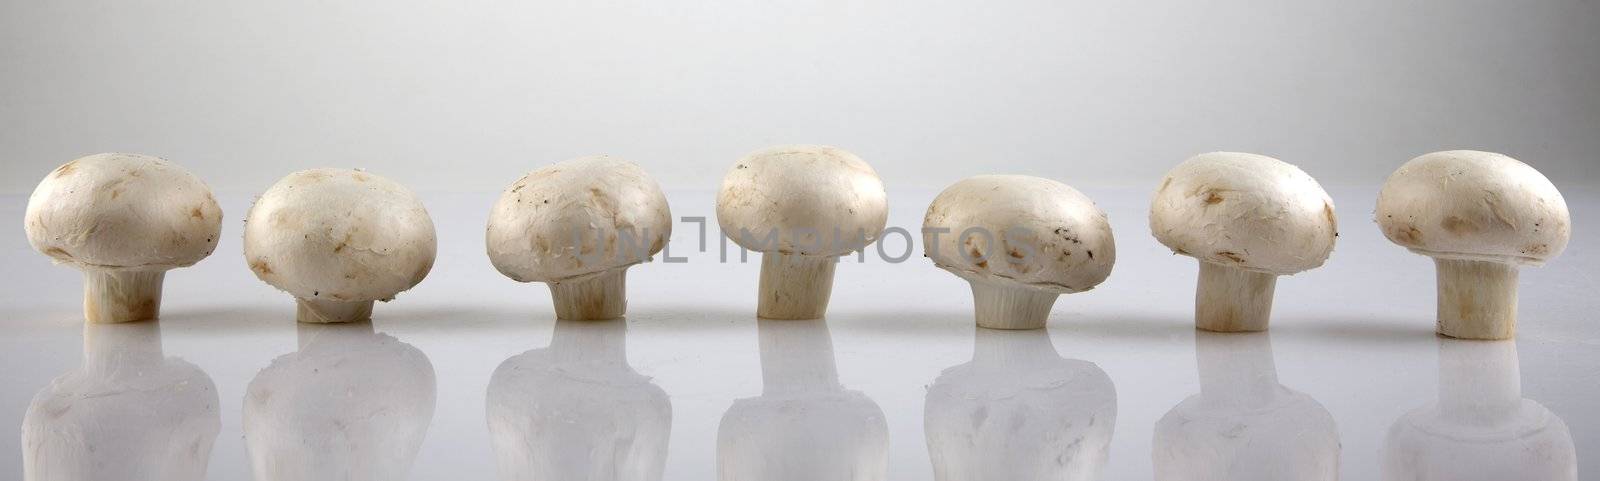 Edible white champignon mushrooms by VictorO